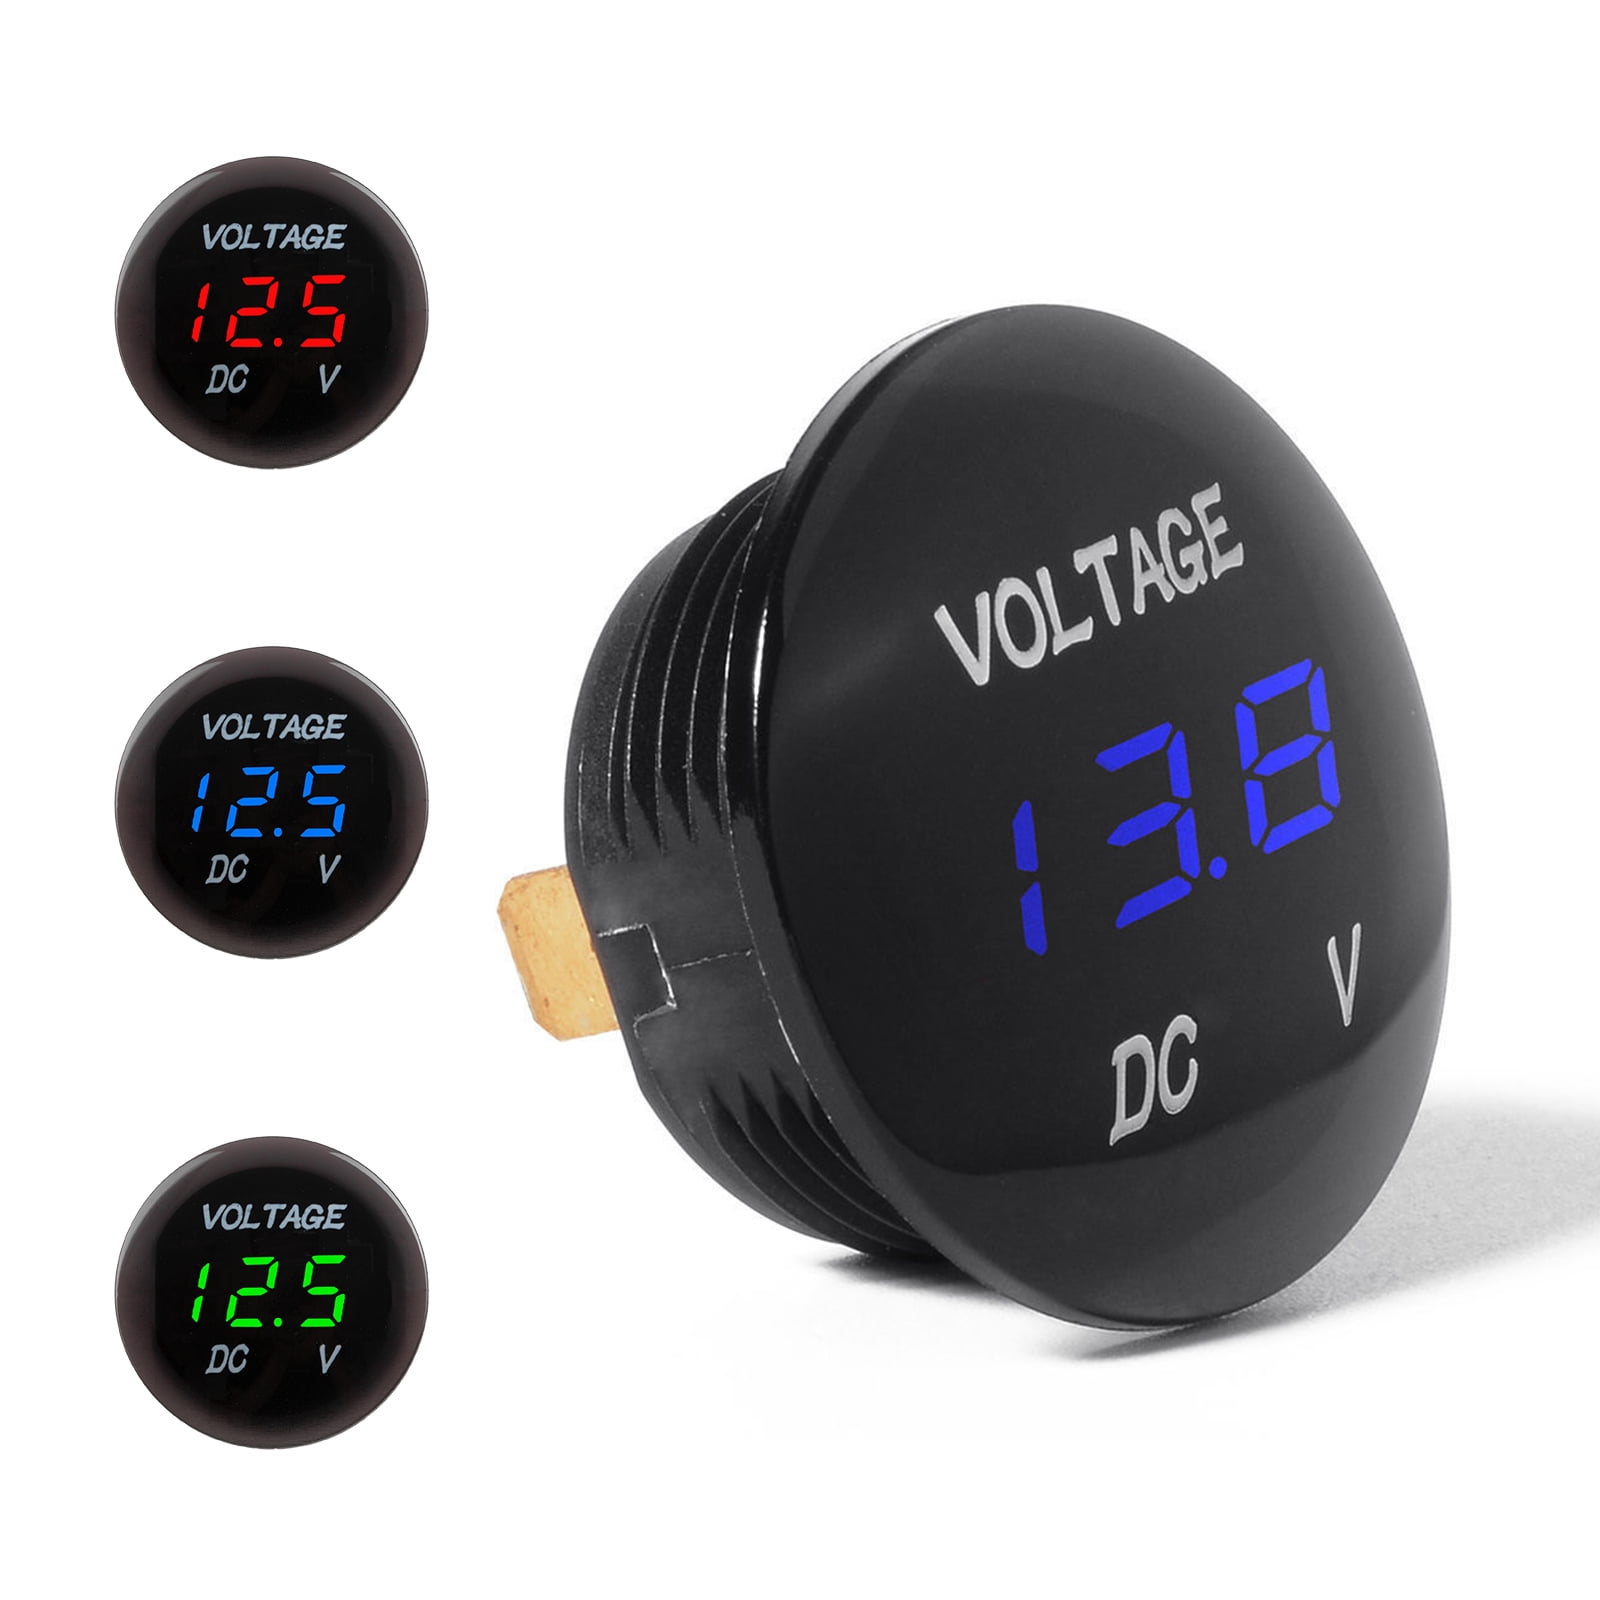 DC 12V Voltage Meter Motorcycle LED Digital Voltmeter Battery Gauge Waterproof